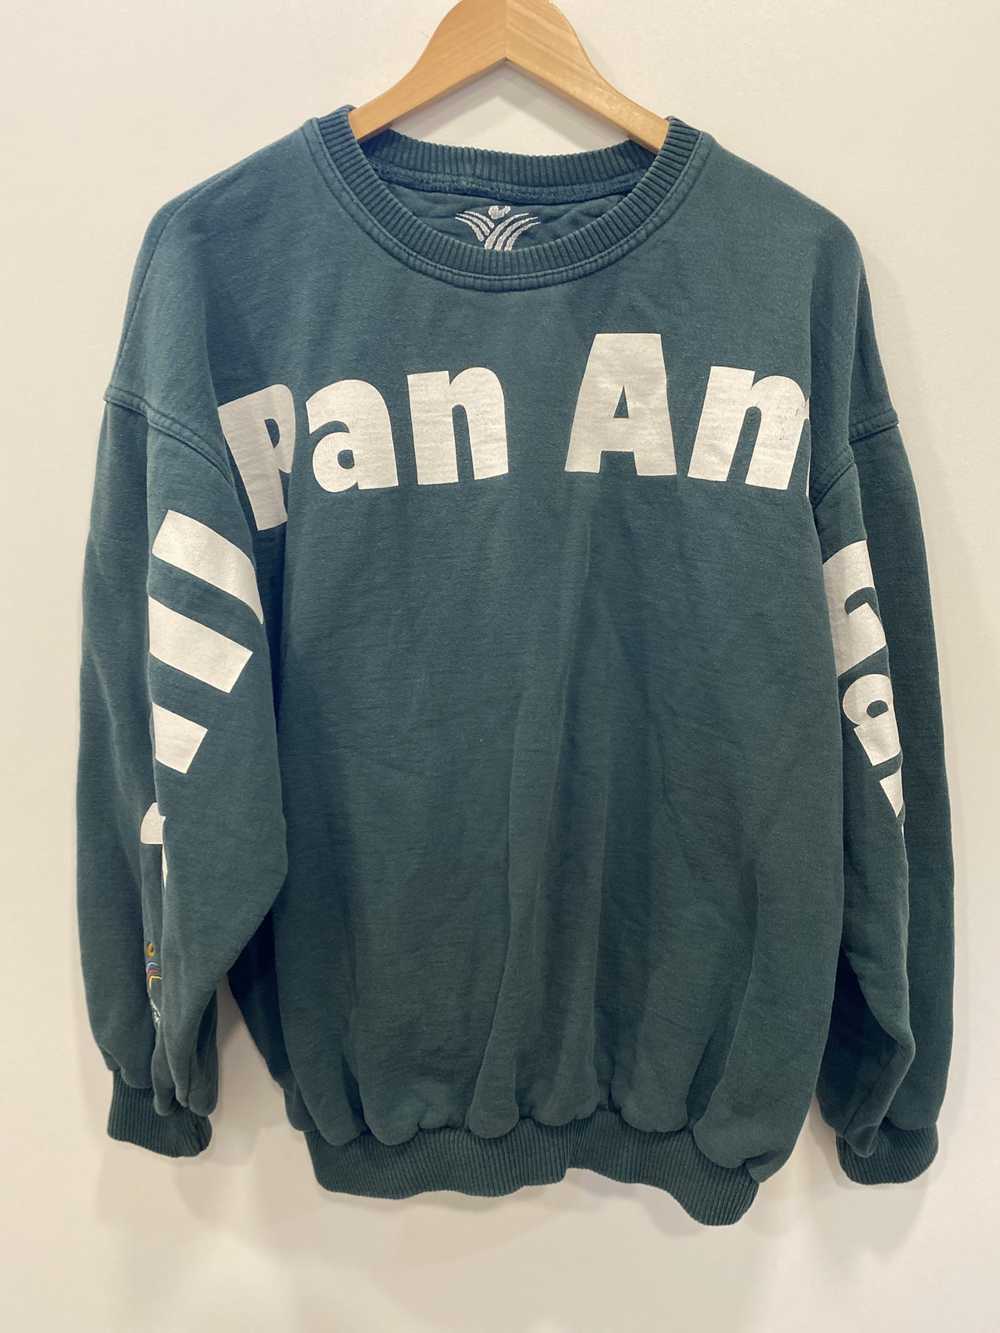 Pan Am Games Sweatshirt 1999 - image 1